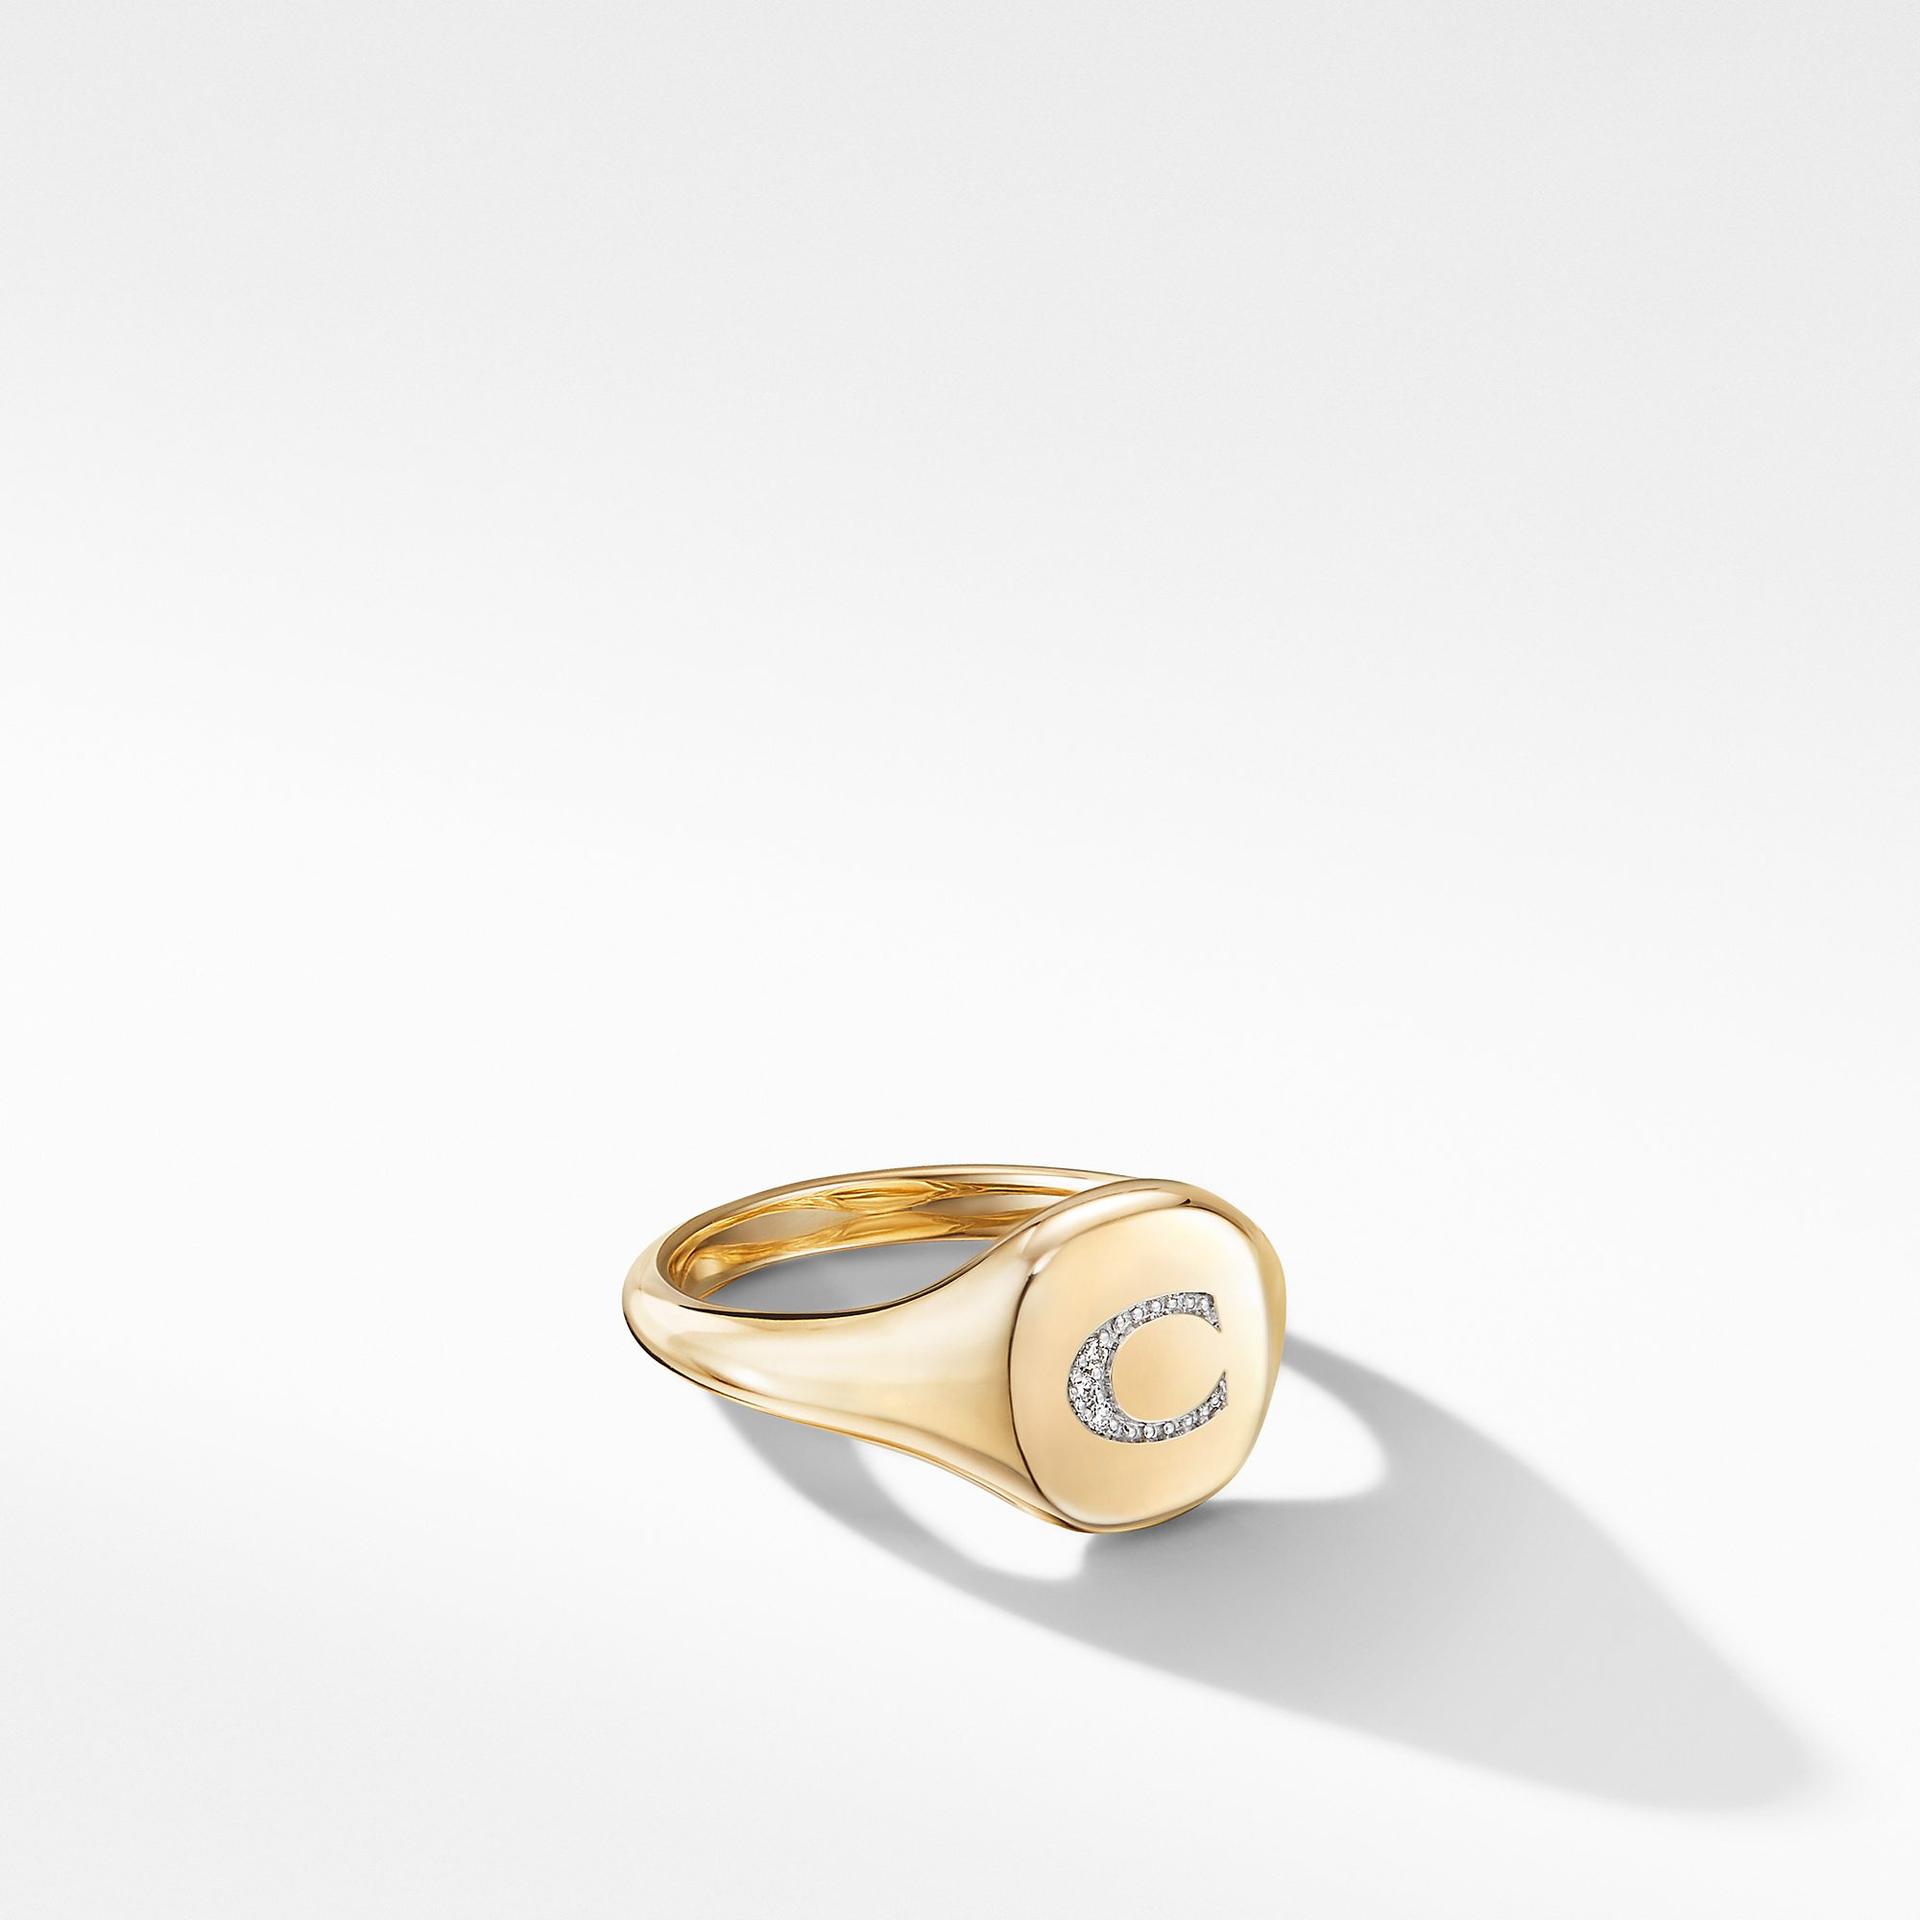 David Yurman Mini DY "C" initial Pinky Ring in 18K Yellow Gold with Diamonds 0